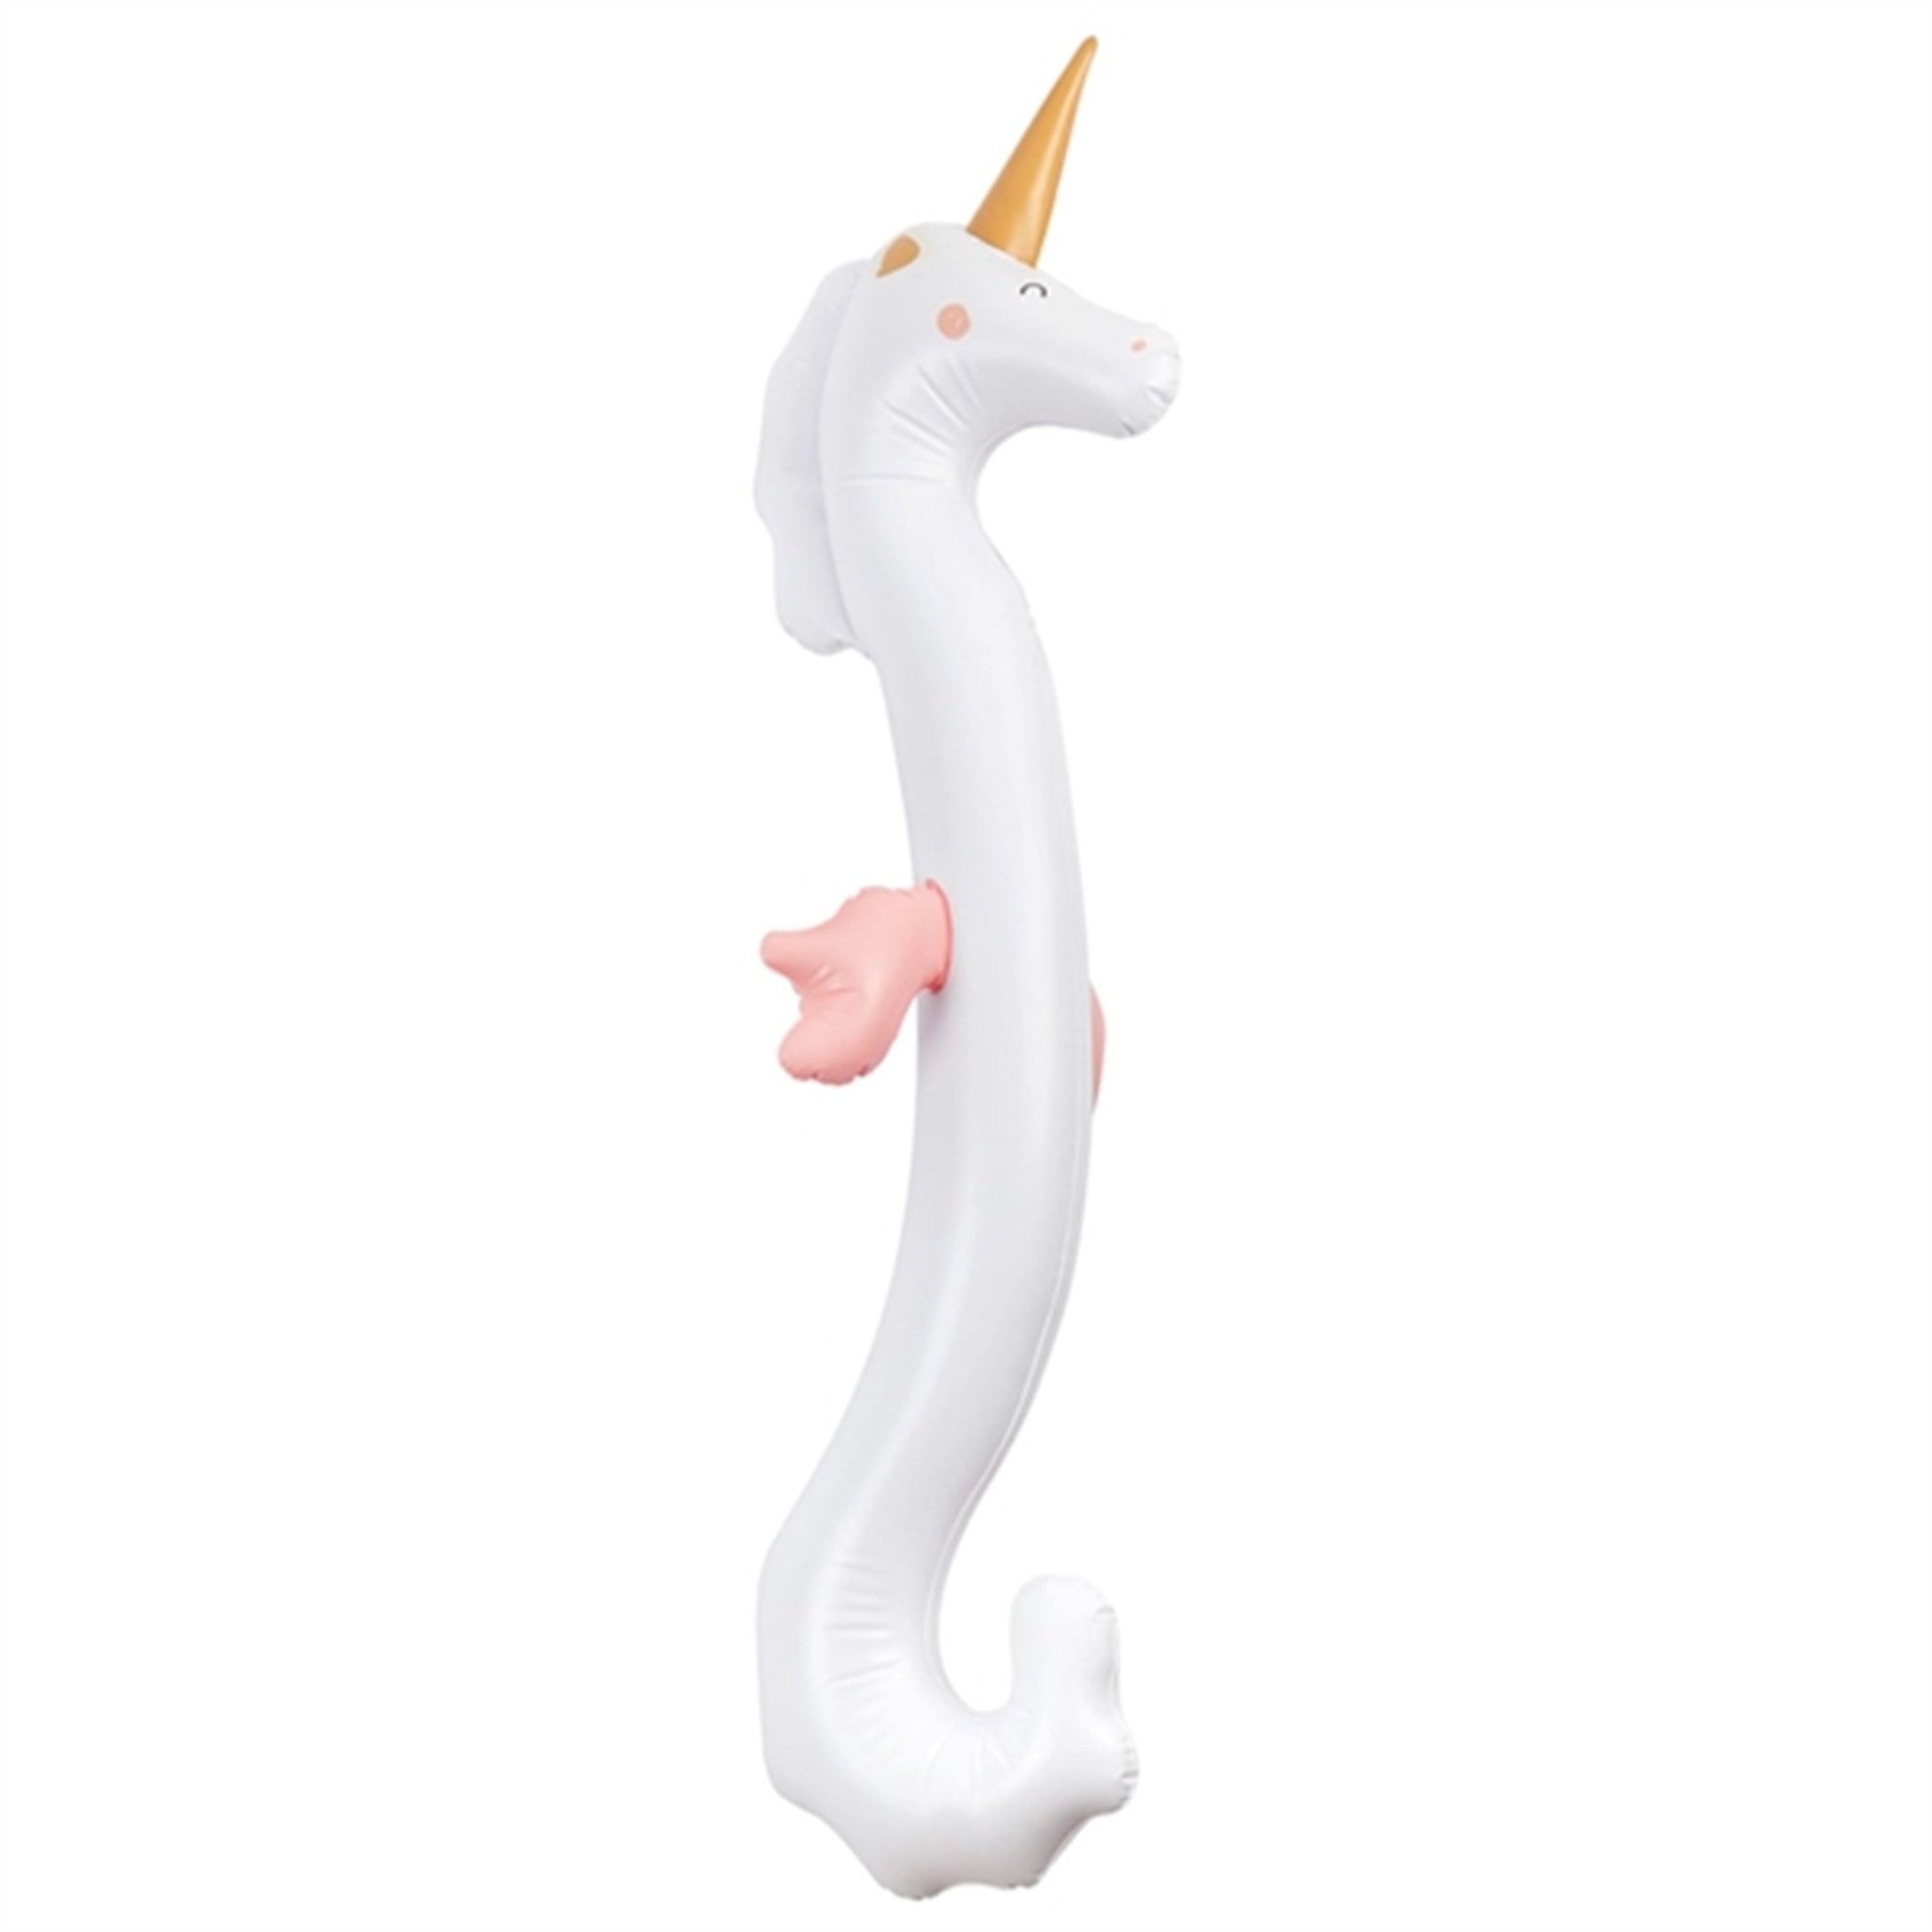 SunnyLife Inflatable Buddy Seahorse Unicorn